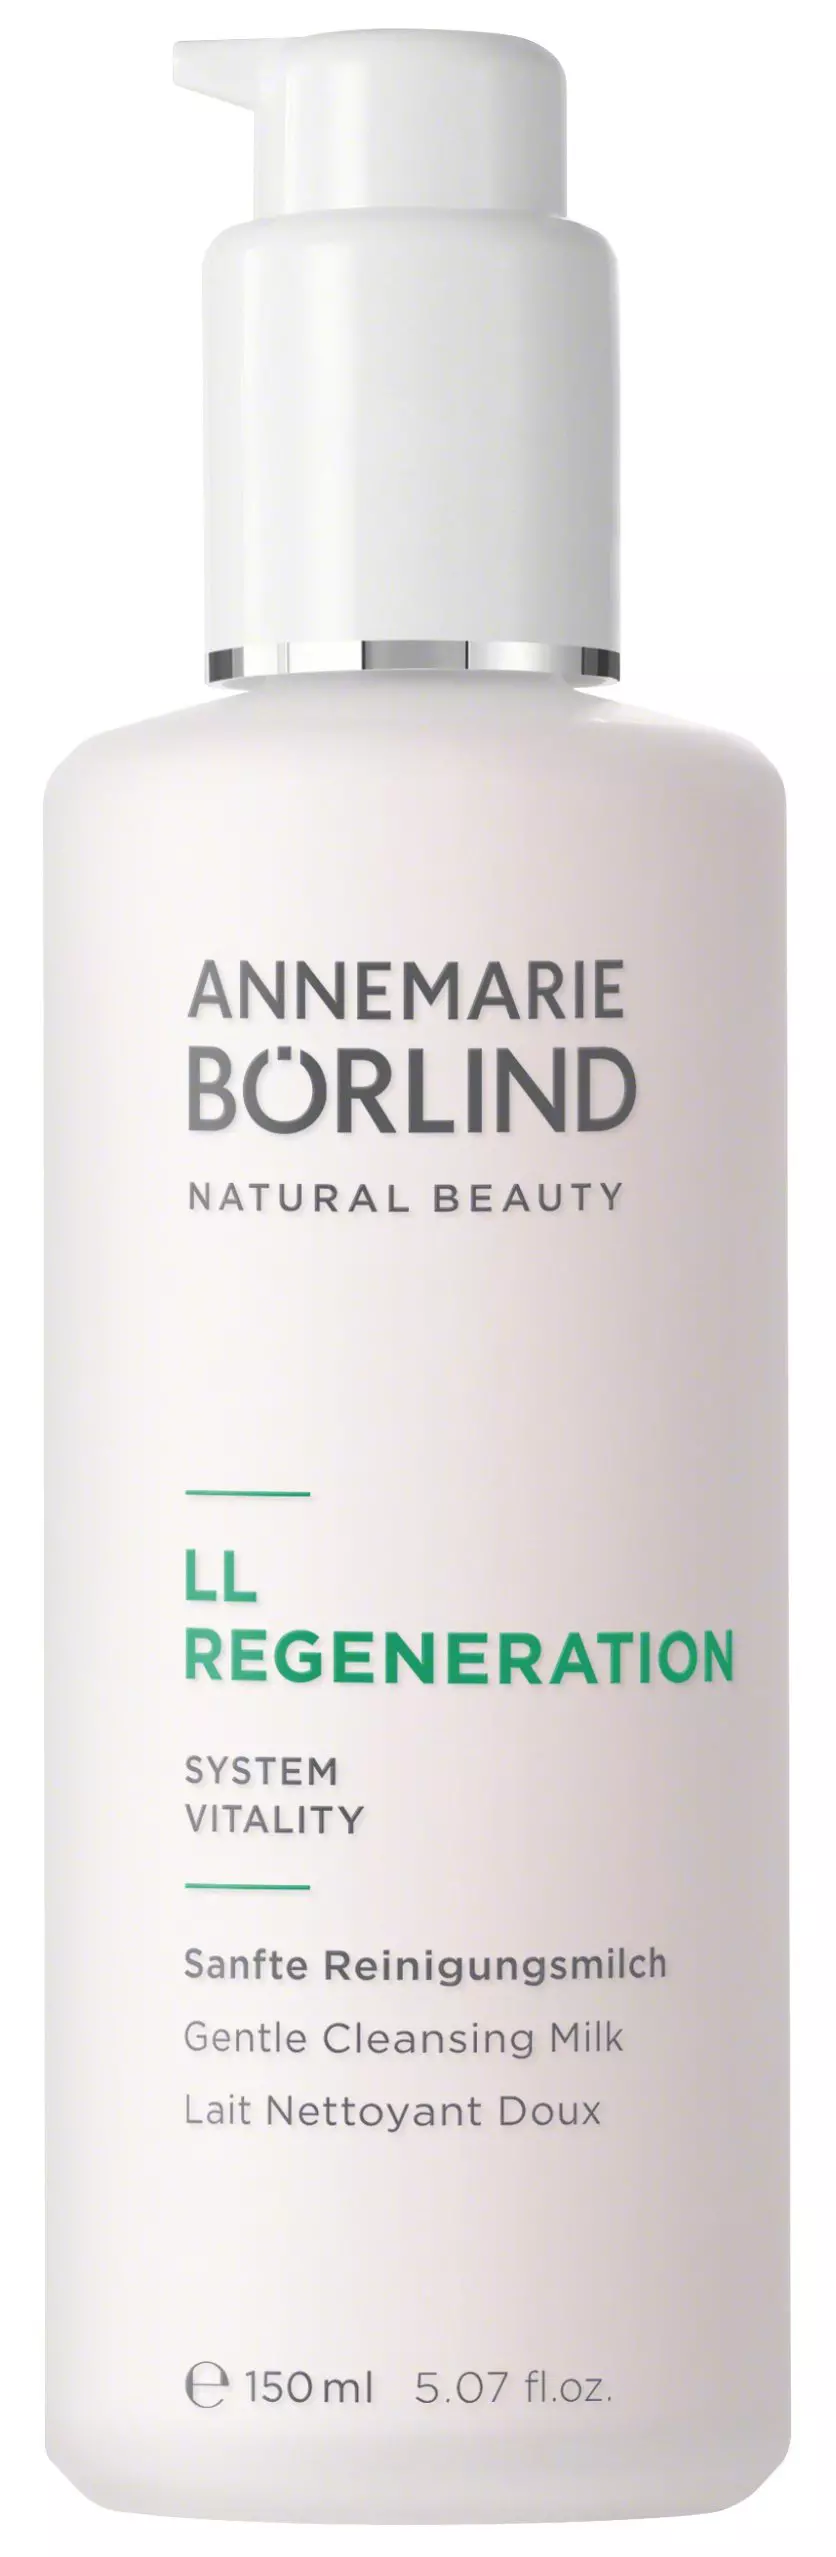 Annemarie Börlind Ll Regeneration Cleansing Milk